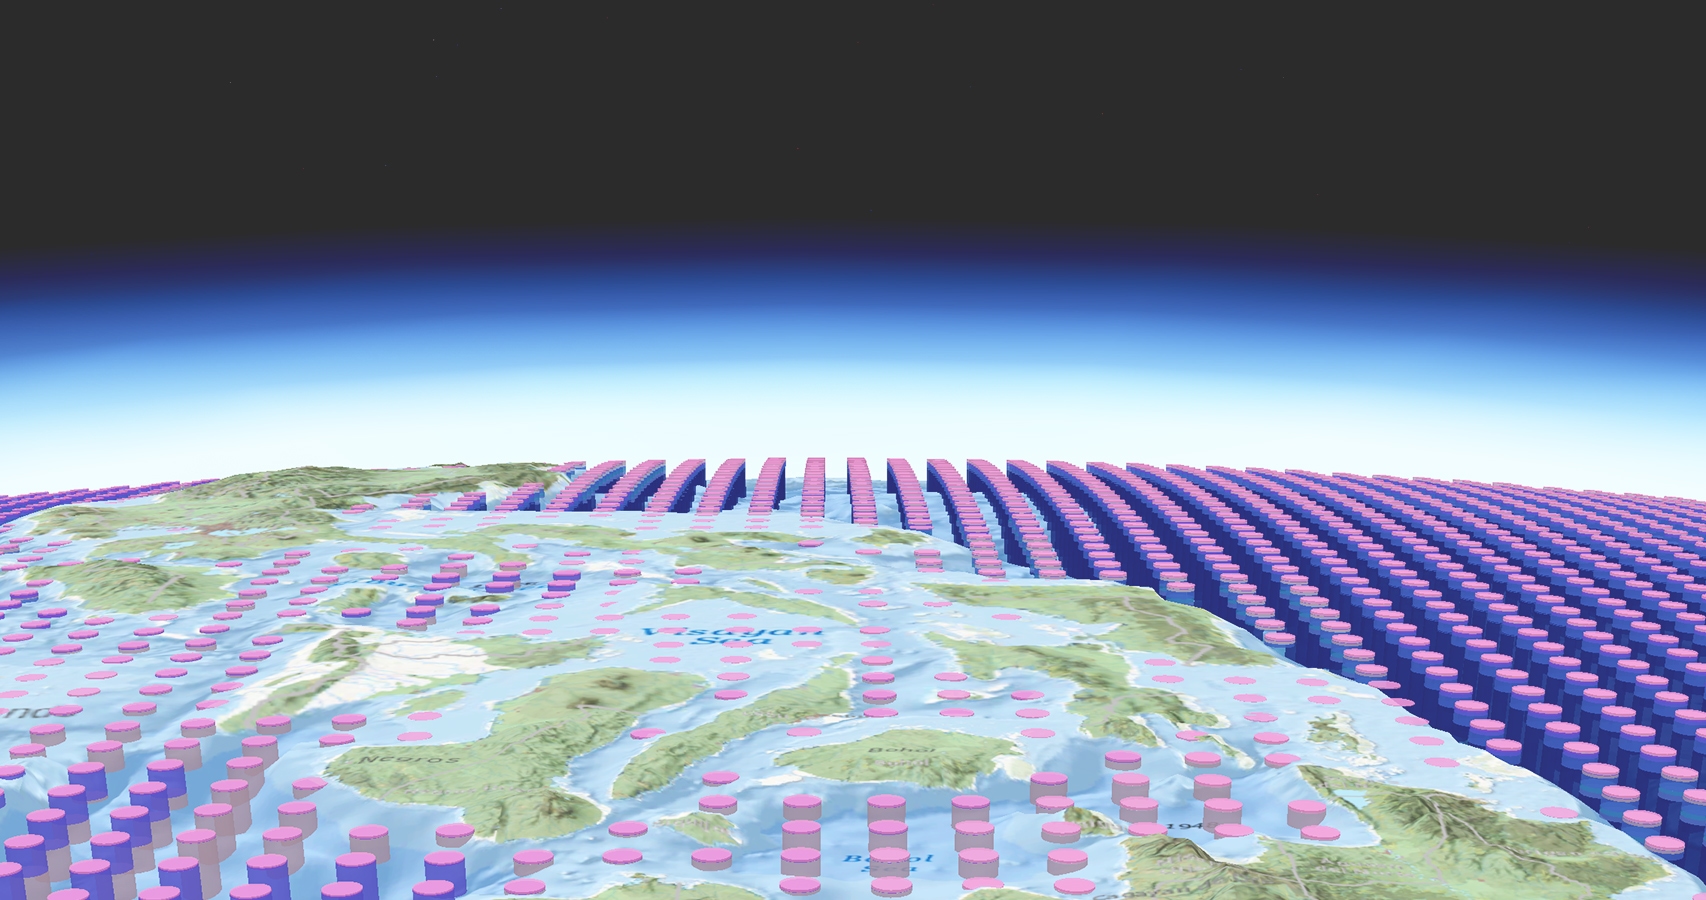 Рисунок с рядами розовых и фиолетовых цилиндров, уложенных аккуратными рядами поверх стилизованной контурной карты Земли